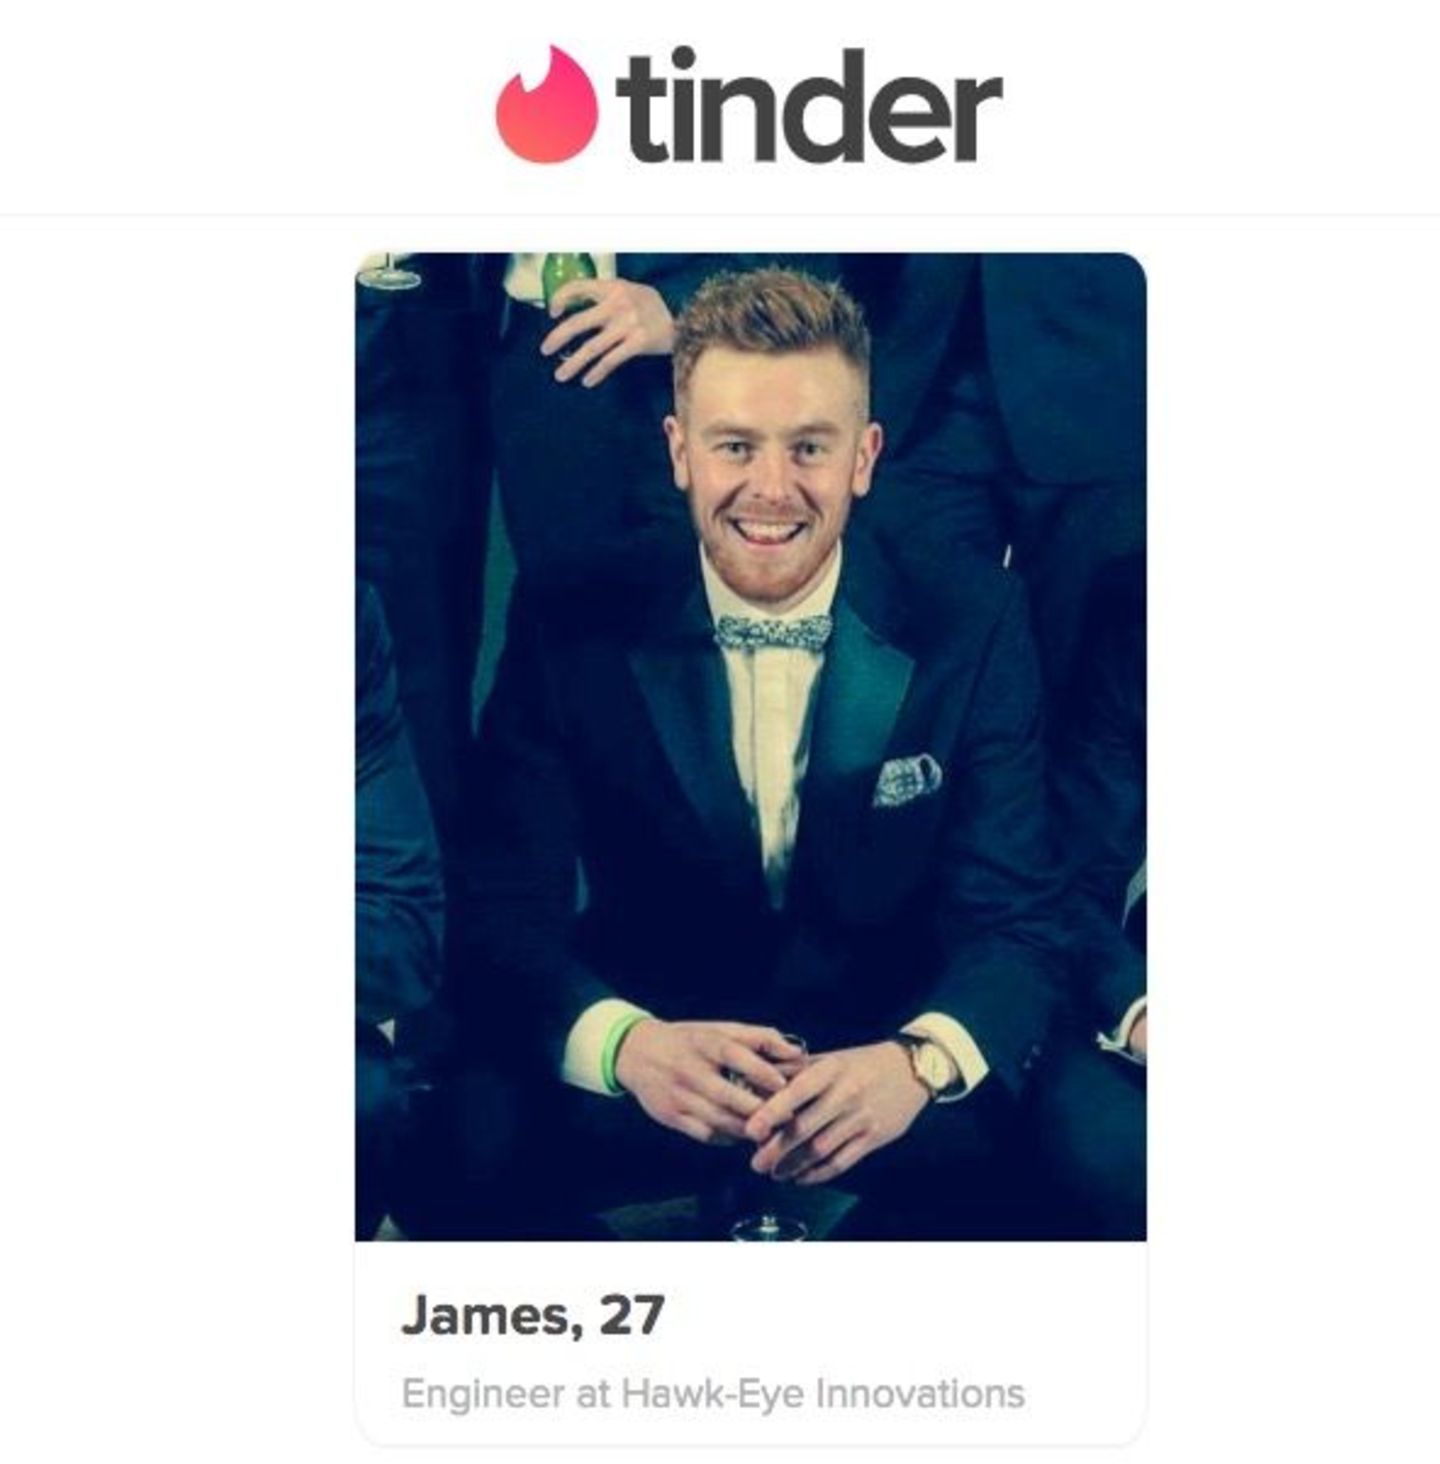 Beste online-dating-profile, um männer anzulocken